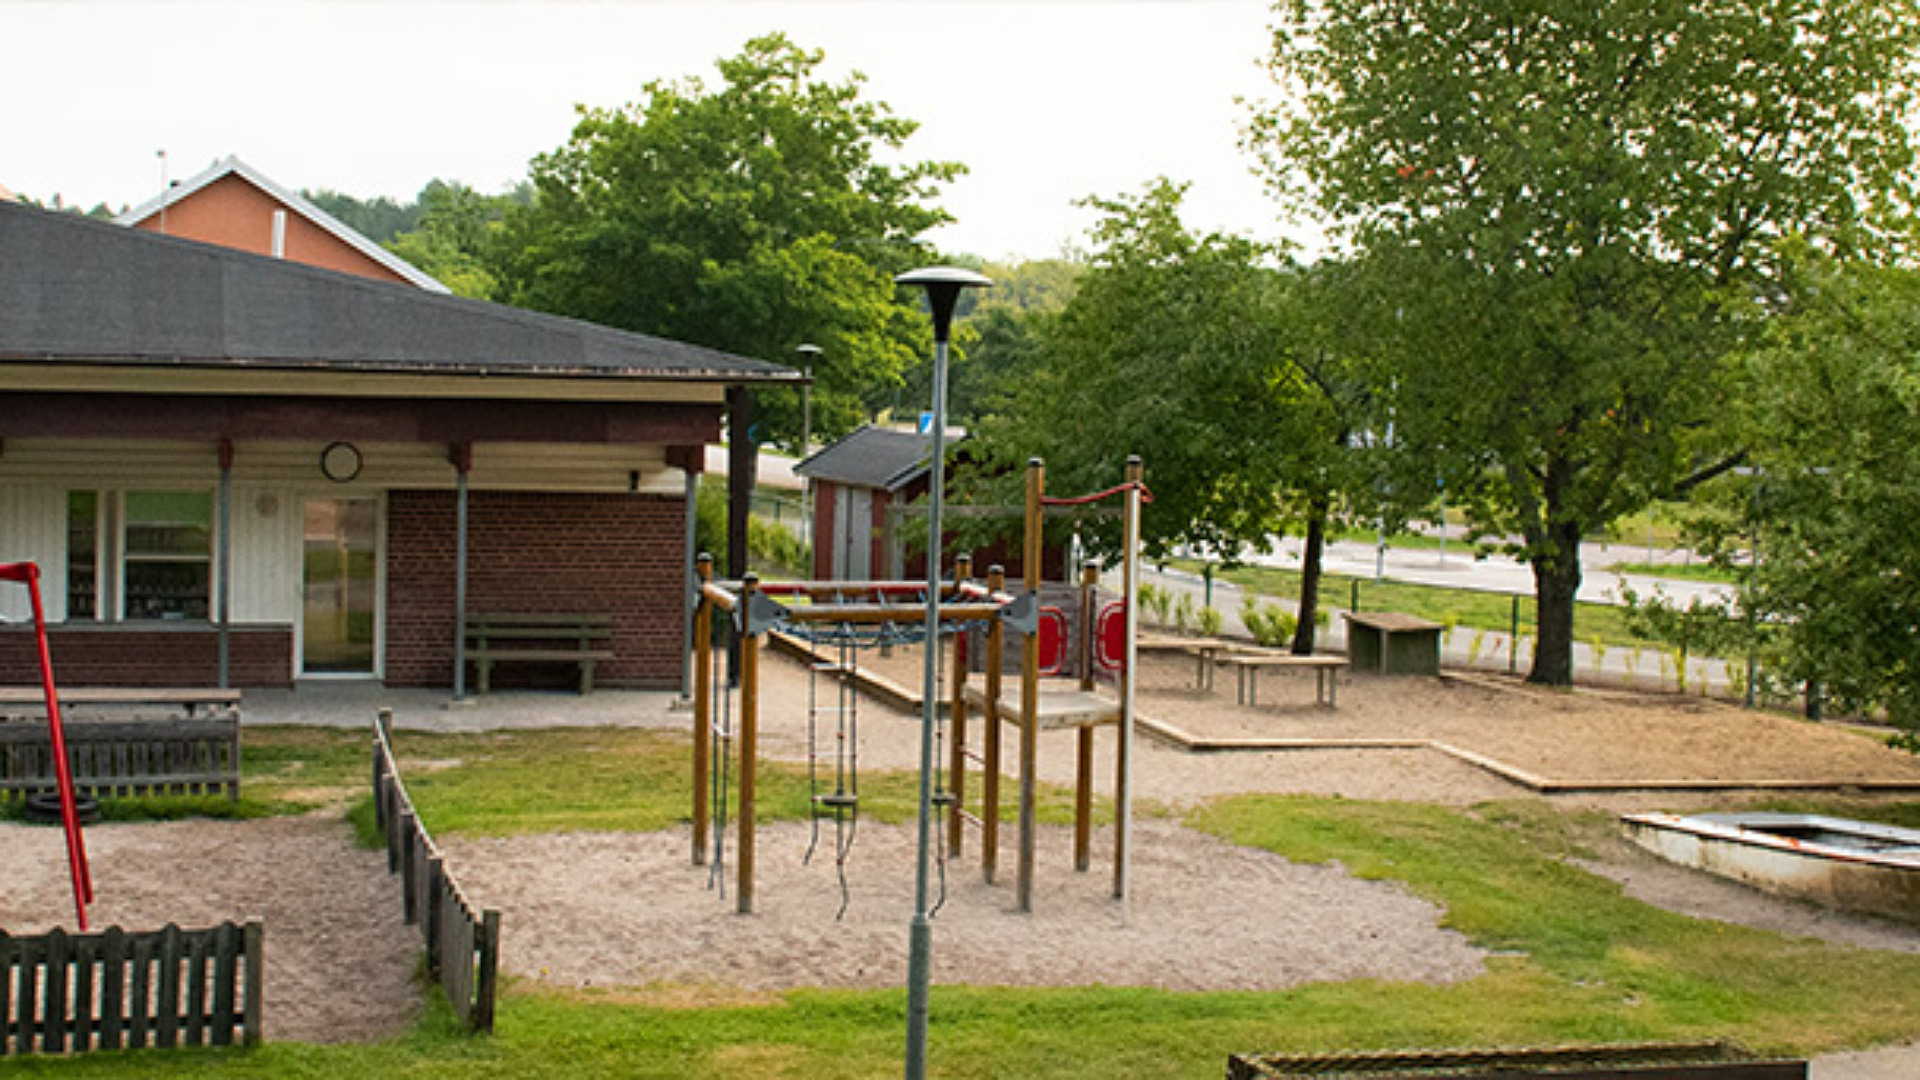 Tomtaklints förskola ha en stor gård med rutschkana, sandlåda, klätterställning och mykcet mer. Förskolan är en enplansbyggnad i tegel.